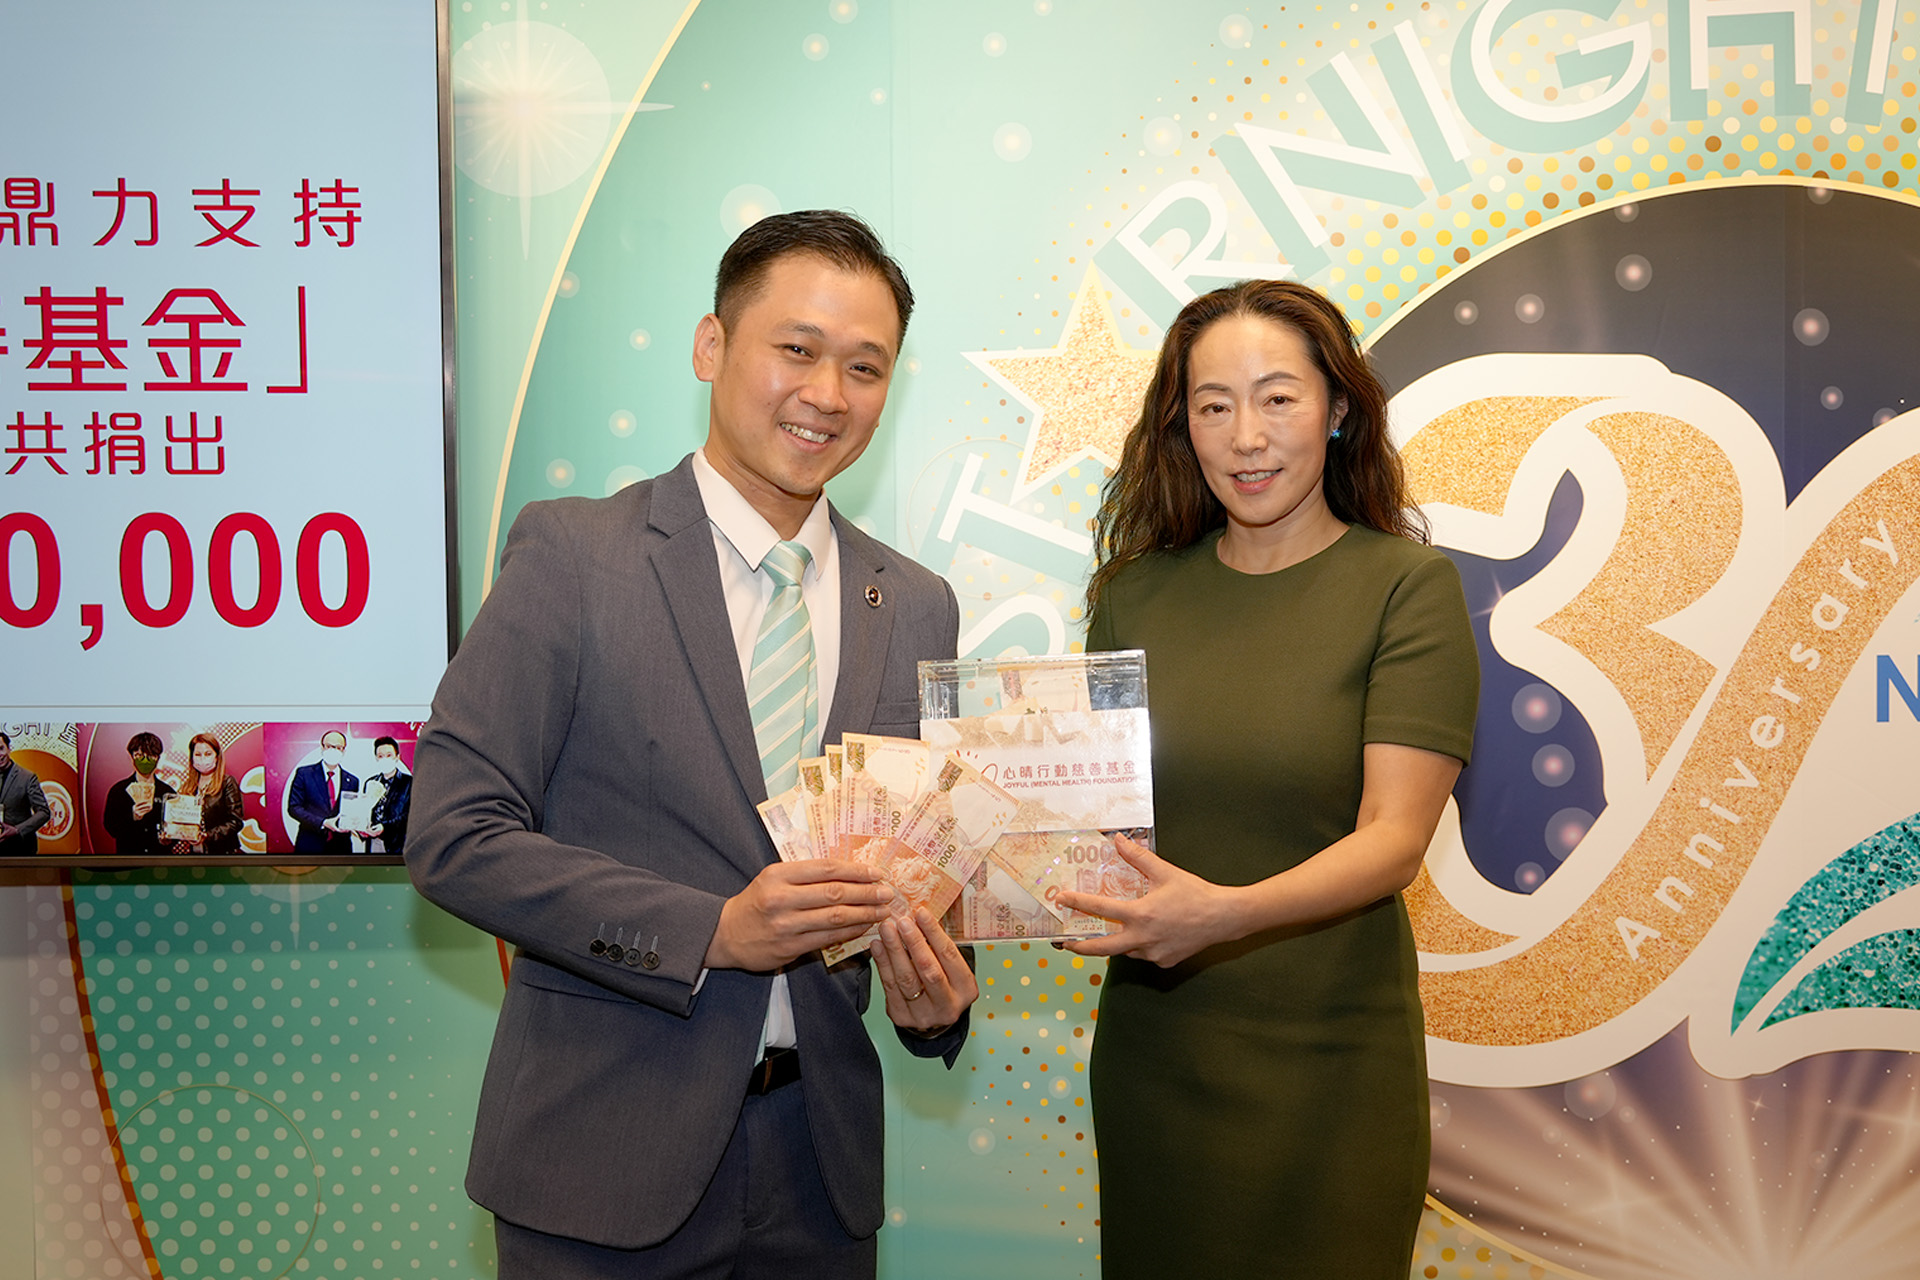 恭賀從李卓霖先生星級百萬富翁遊戲贏取HK$10,000獎金並與公司合共捐助HK$10000予「心晴行動慈善基金」